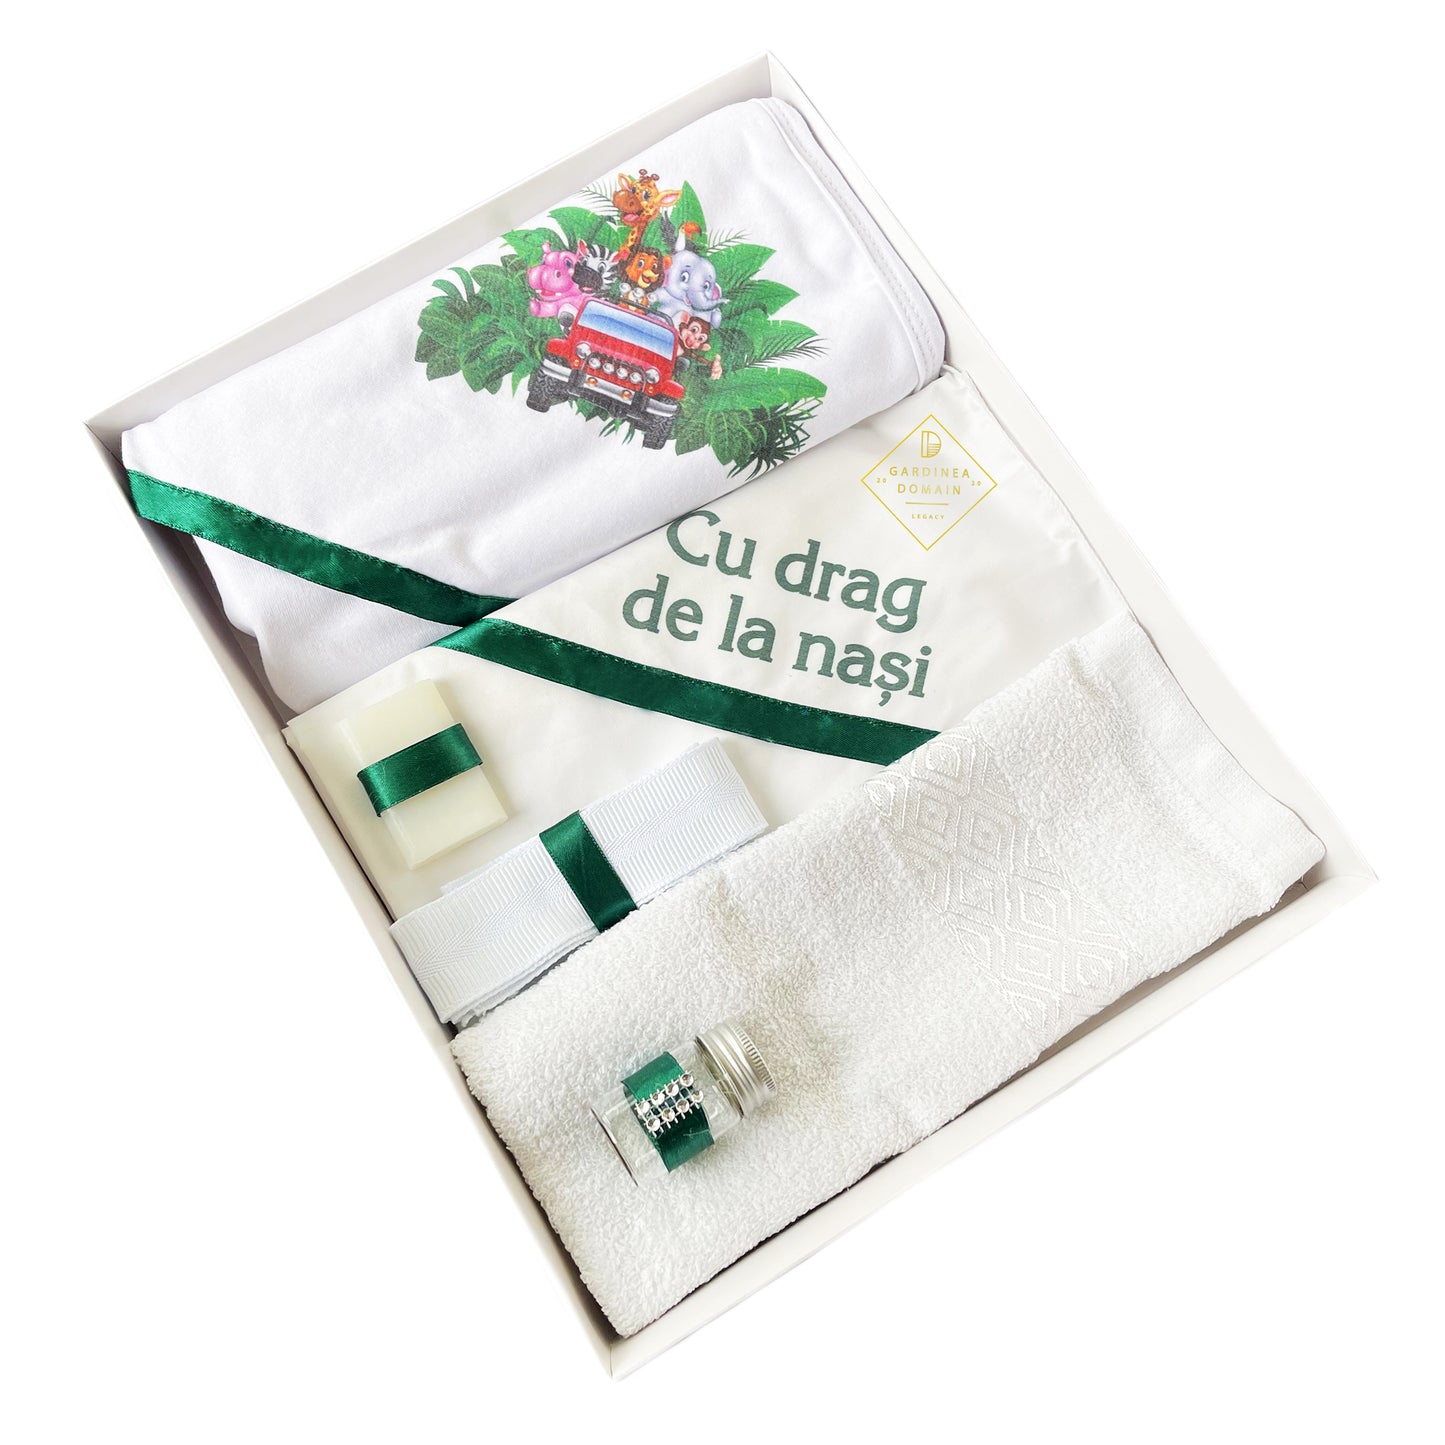 Trusou Animalutele vesele botez Gardinea Domain® 6 piese, in cutie cadou, bumbac 100%, personalizat cu mesajul "Cu drag de la nasi!" verde